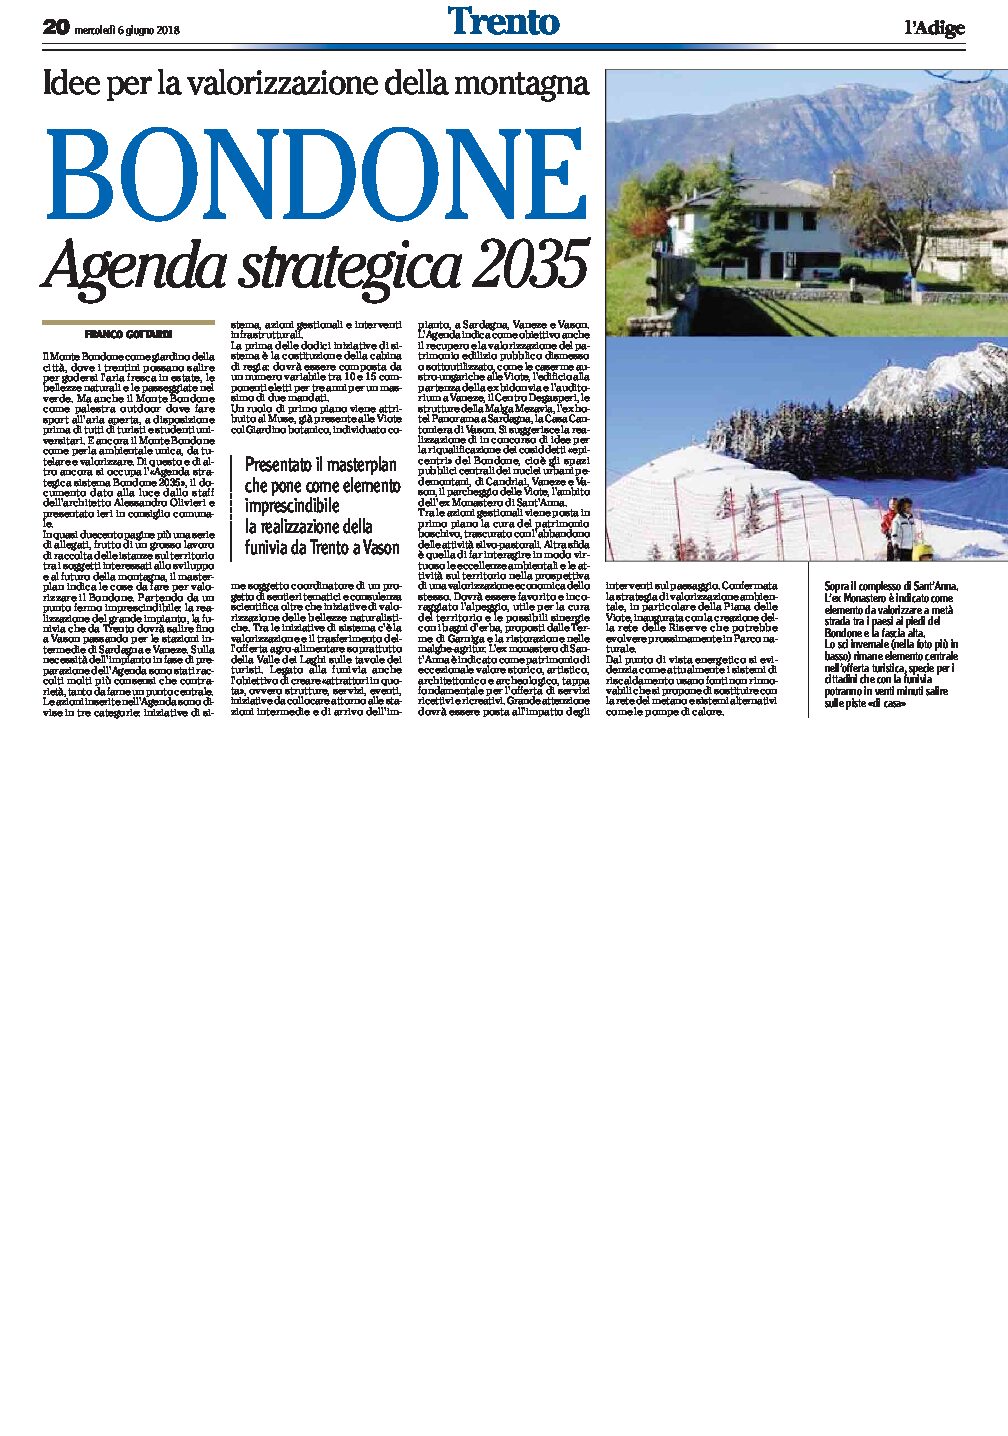 Bondone: presentato il masterplan “Agenda strategica 2035”